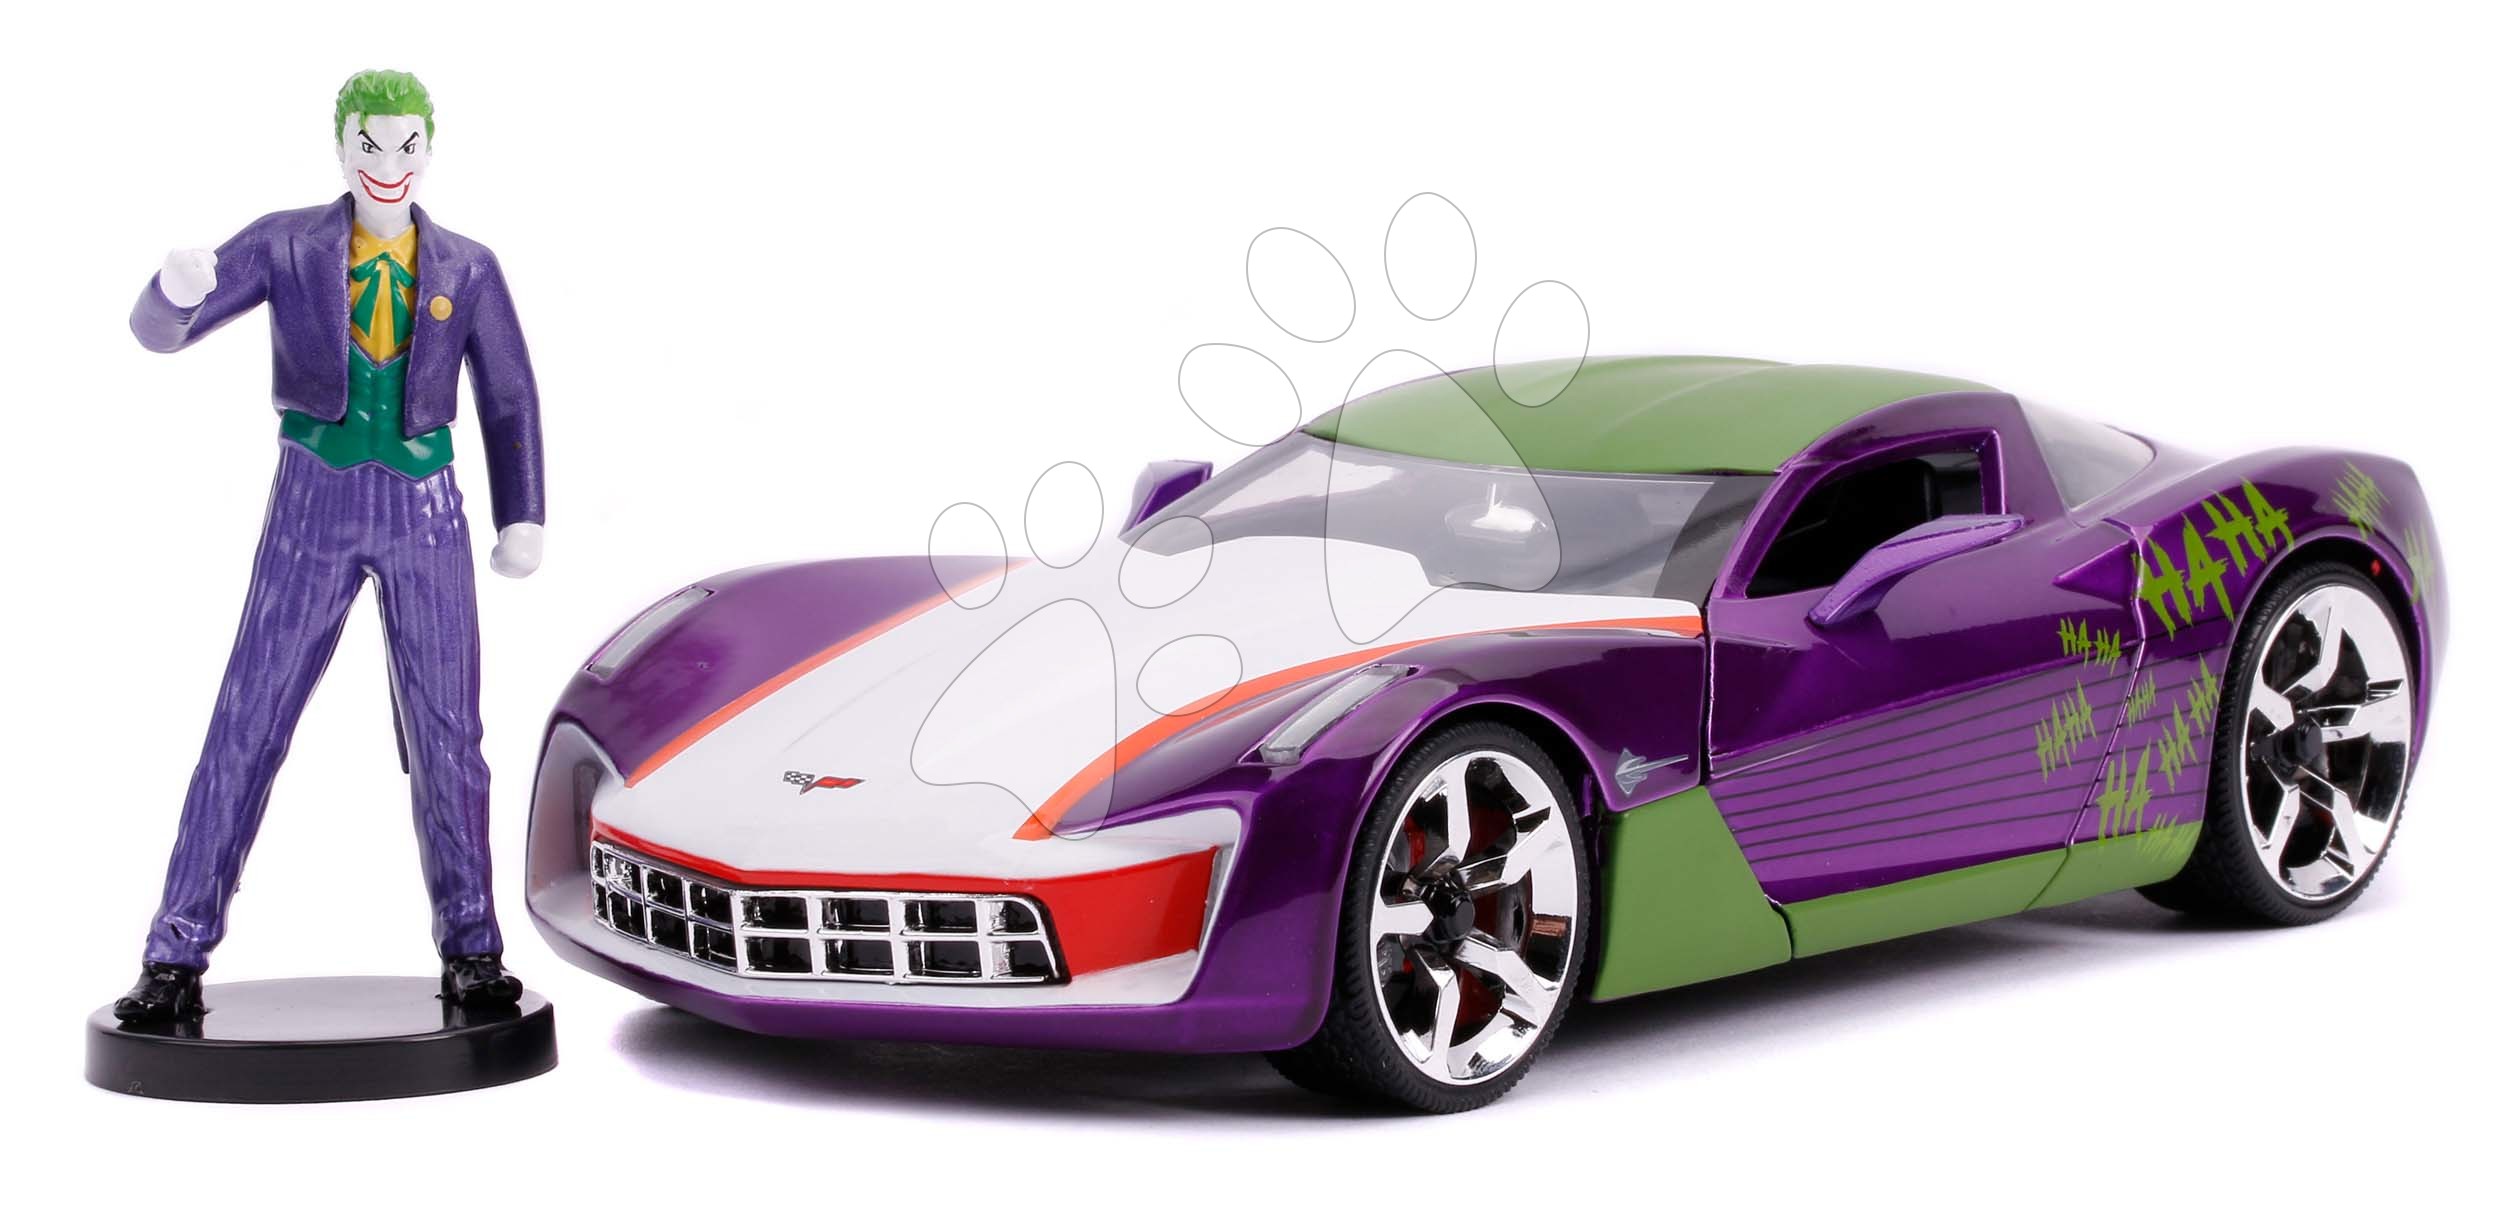 Kisautó DC Chevy Corvette Stingray 2009 Jada fém nyitható részekkel és Joker figurával hossza 20 cm 1:24